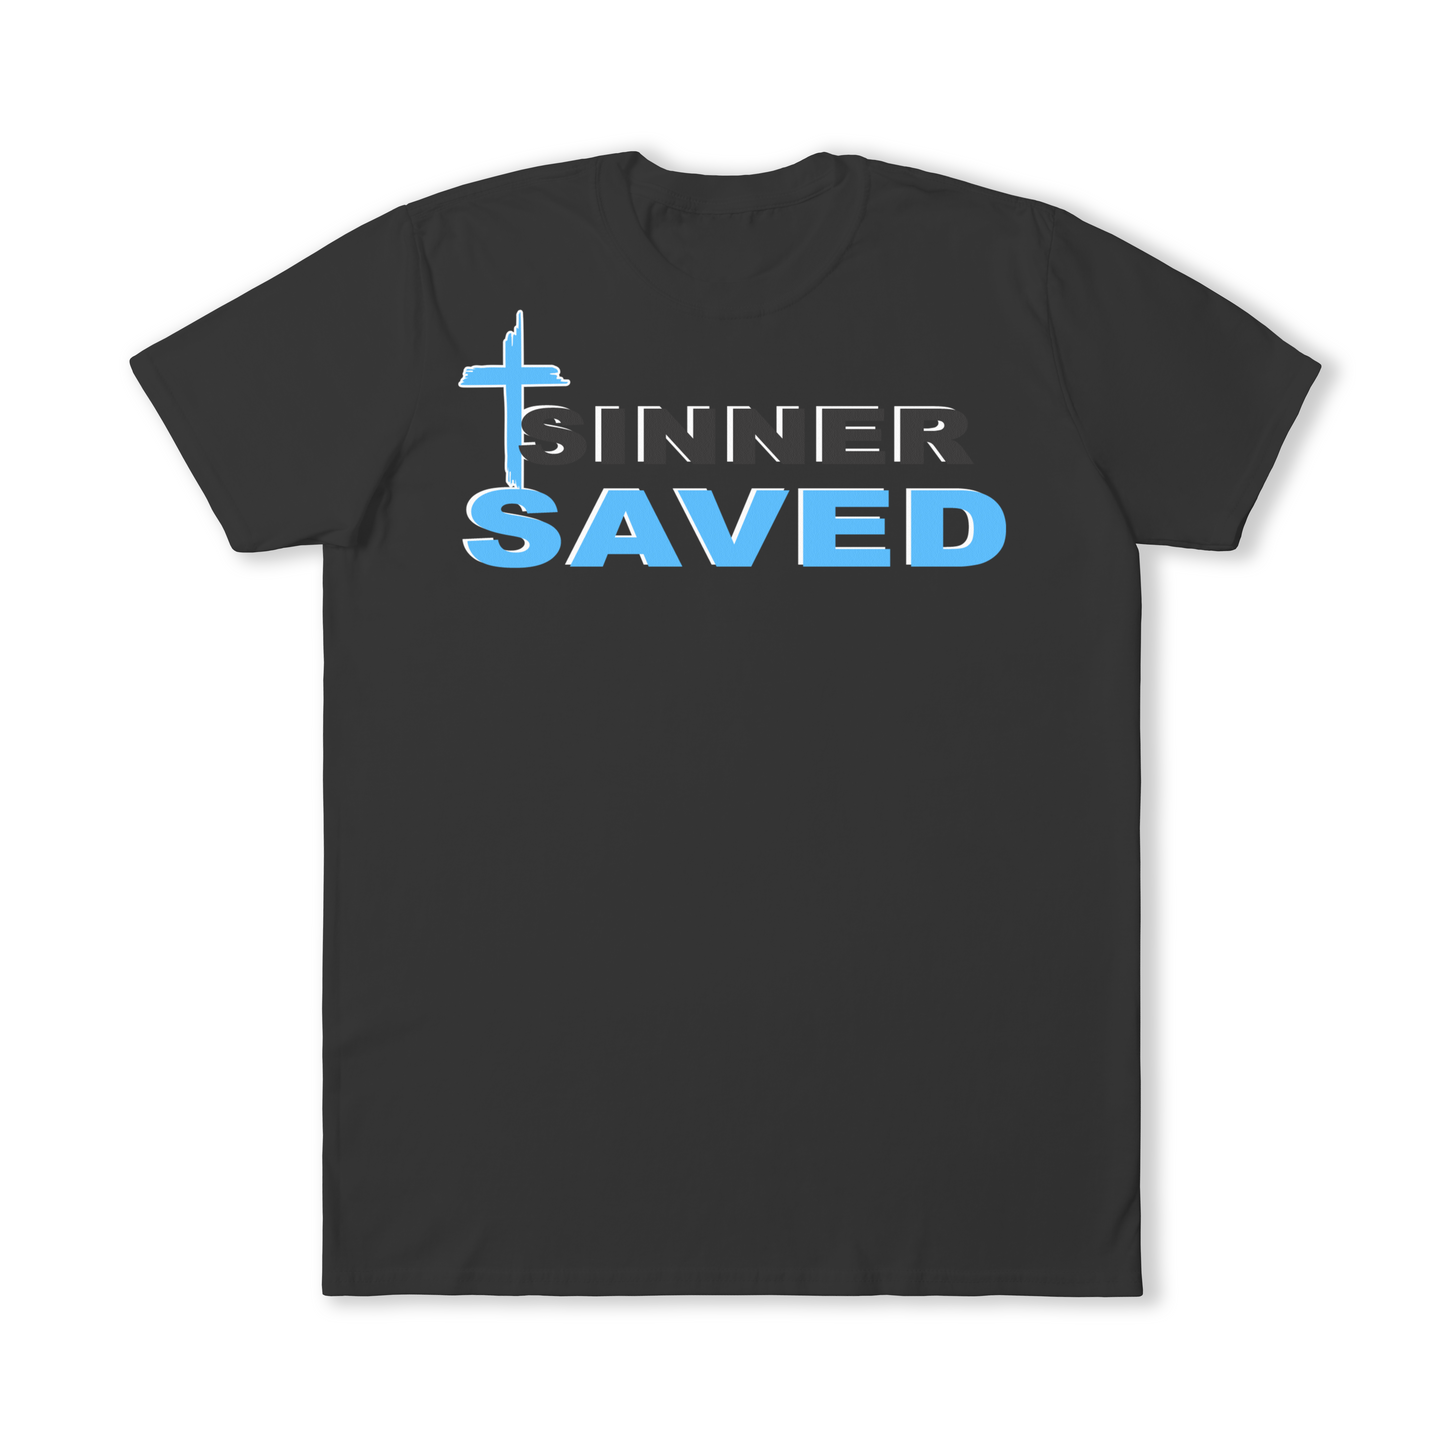 Sinner Saved T-Shirt